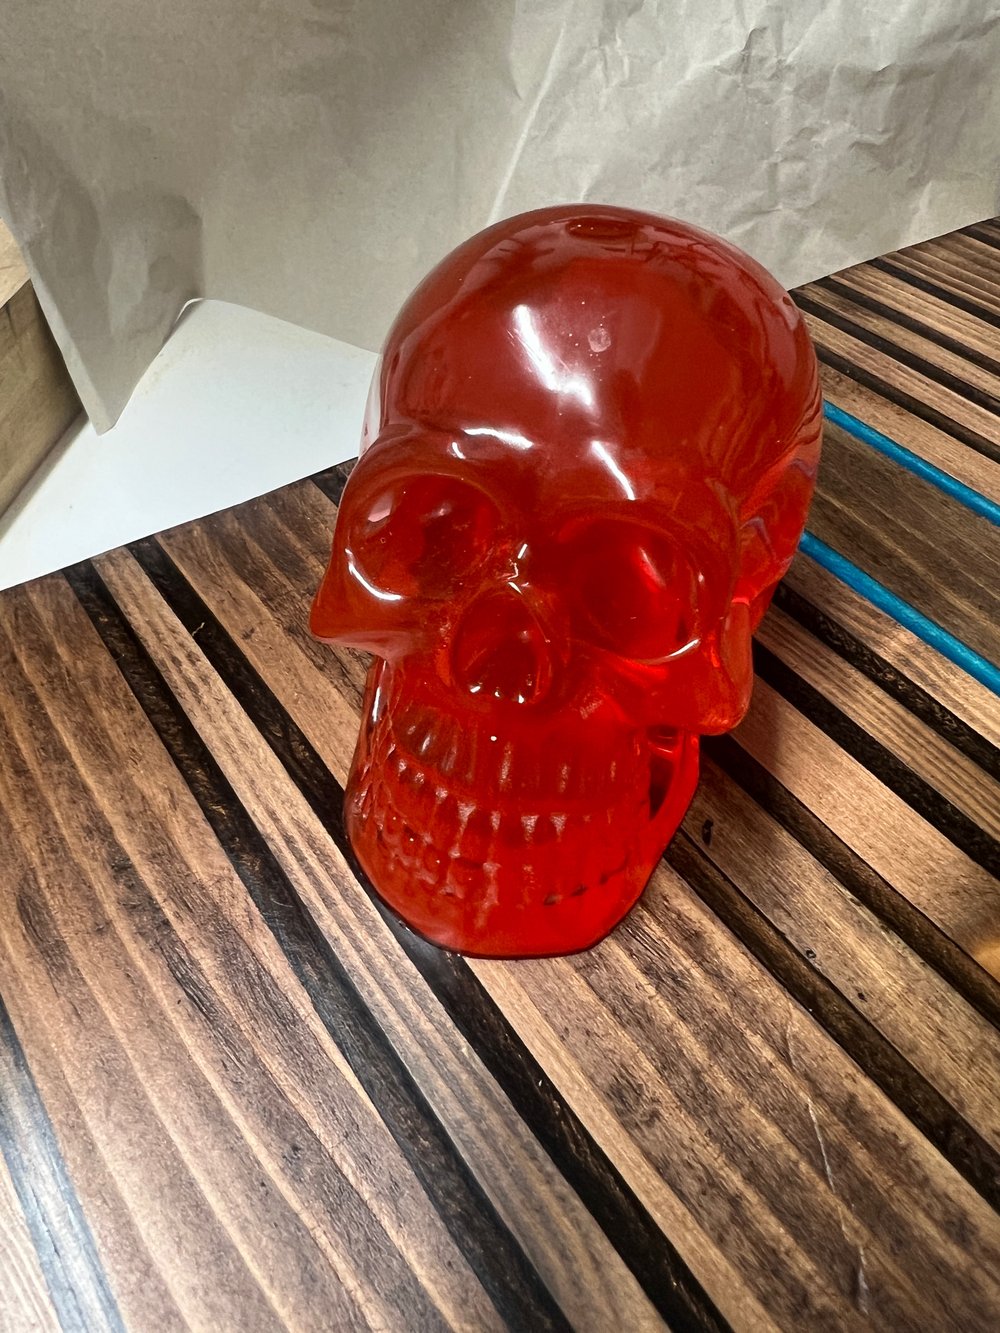 Red Skull 